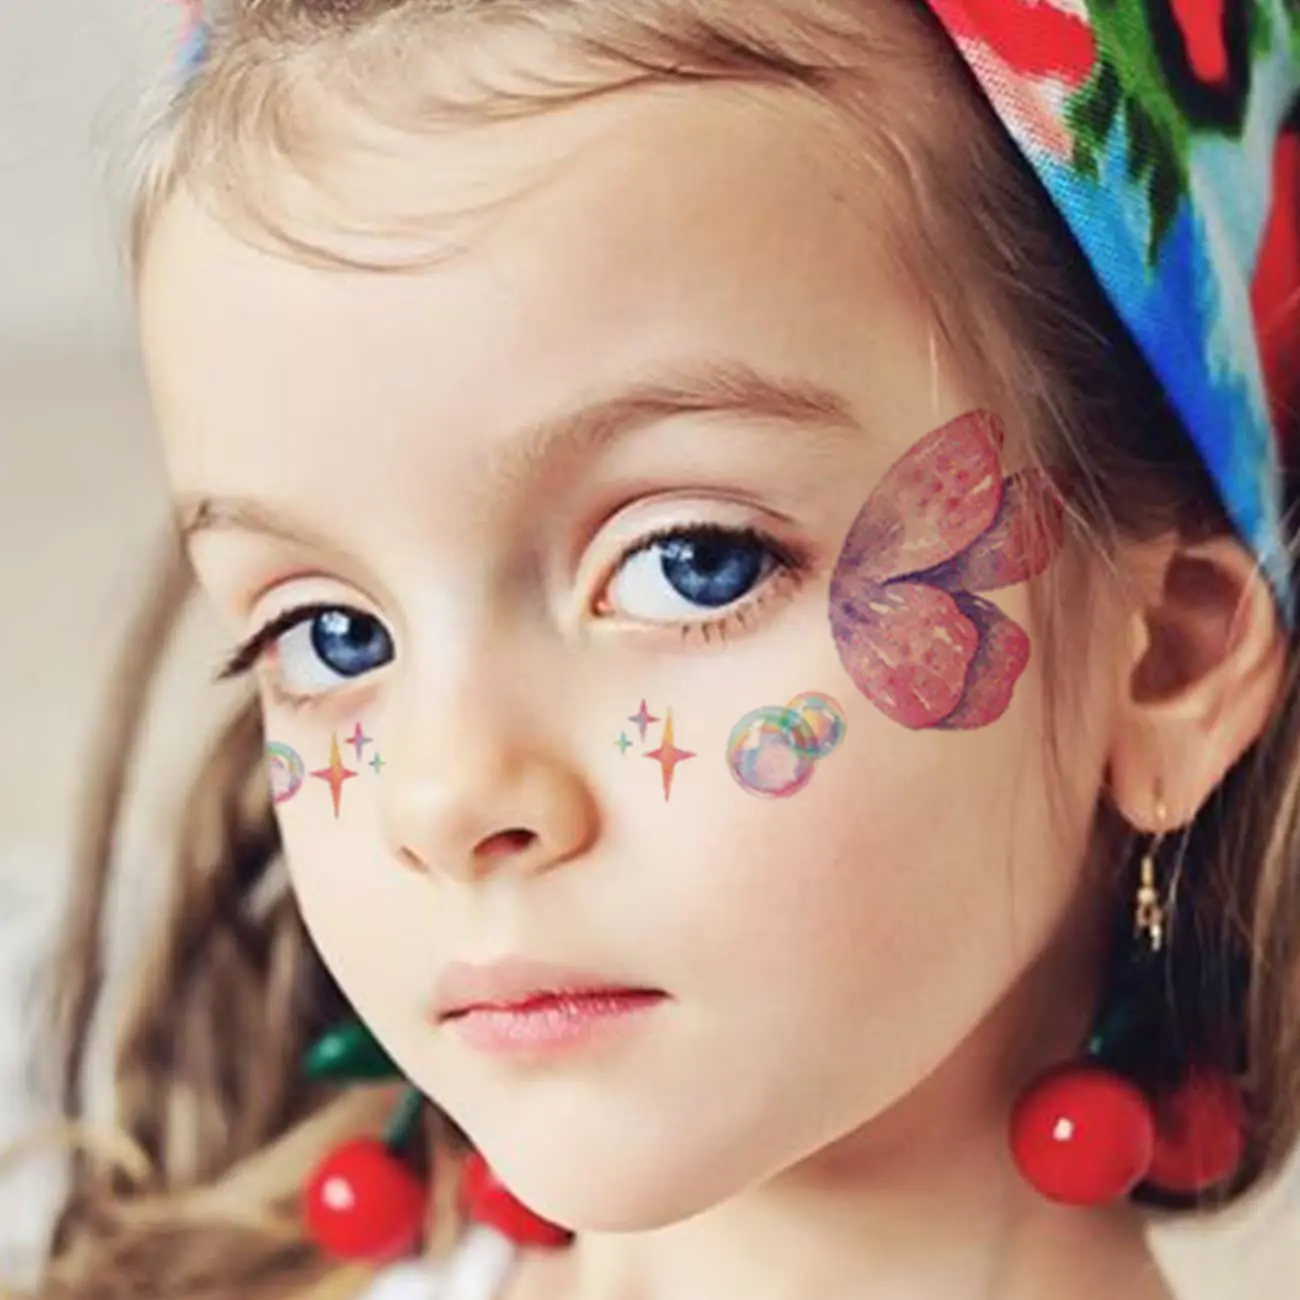 12 arkuszy motylkowe tatuaże tymczasowe dla dzieci kobiece oczy Make Up Galaxy wodoodporne naklejki na tatuaż na imprezę upominki